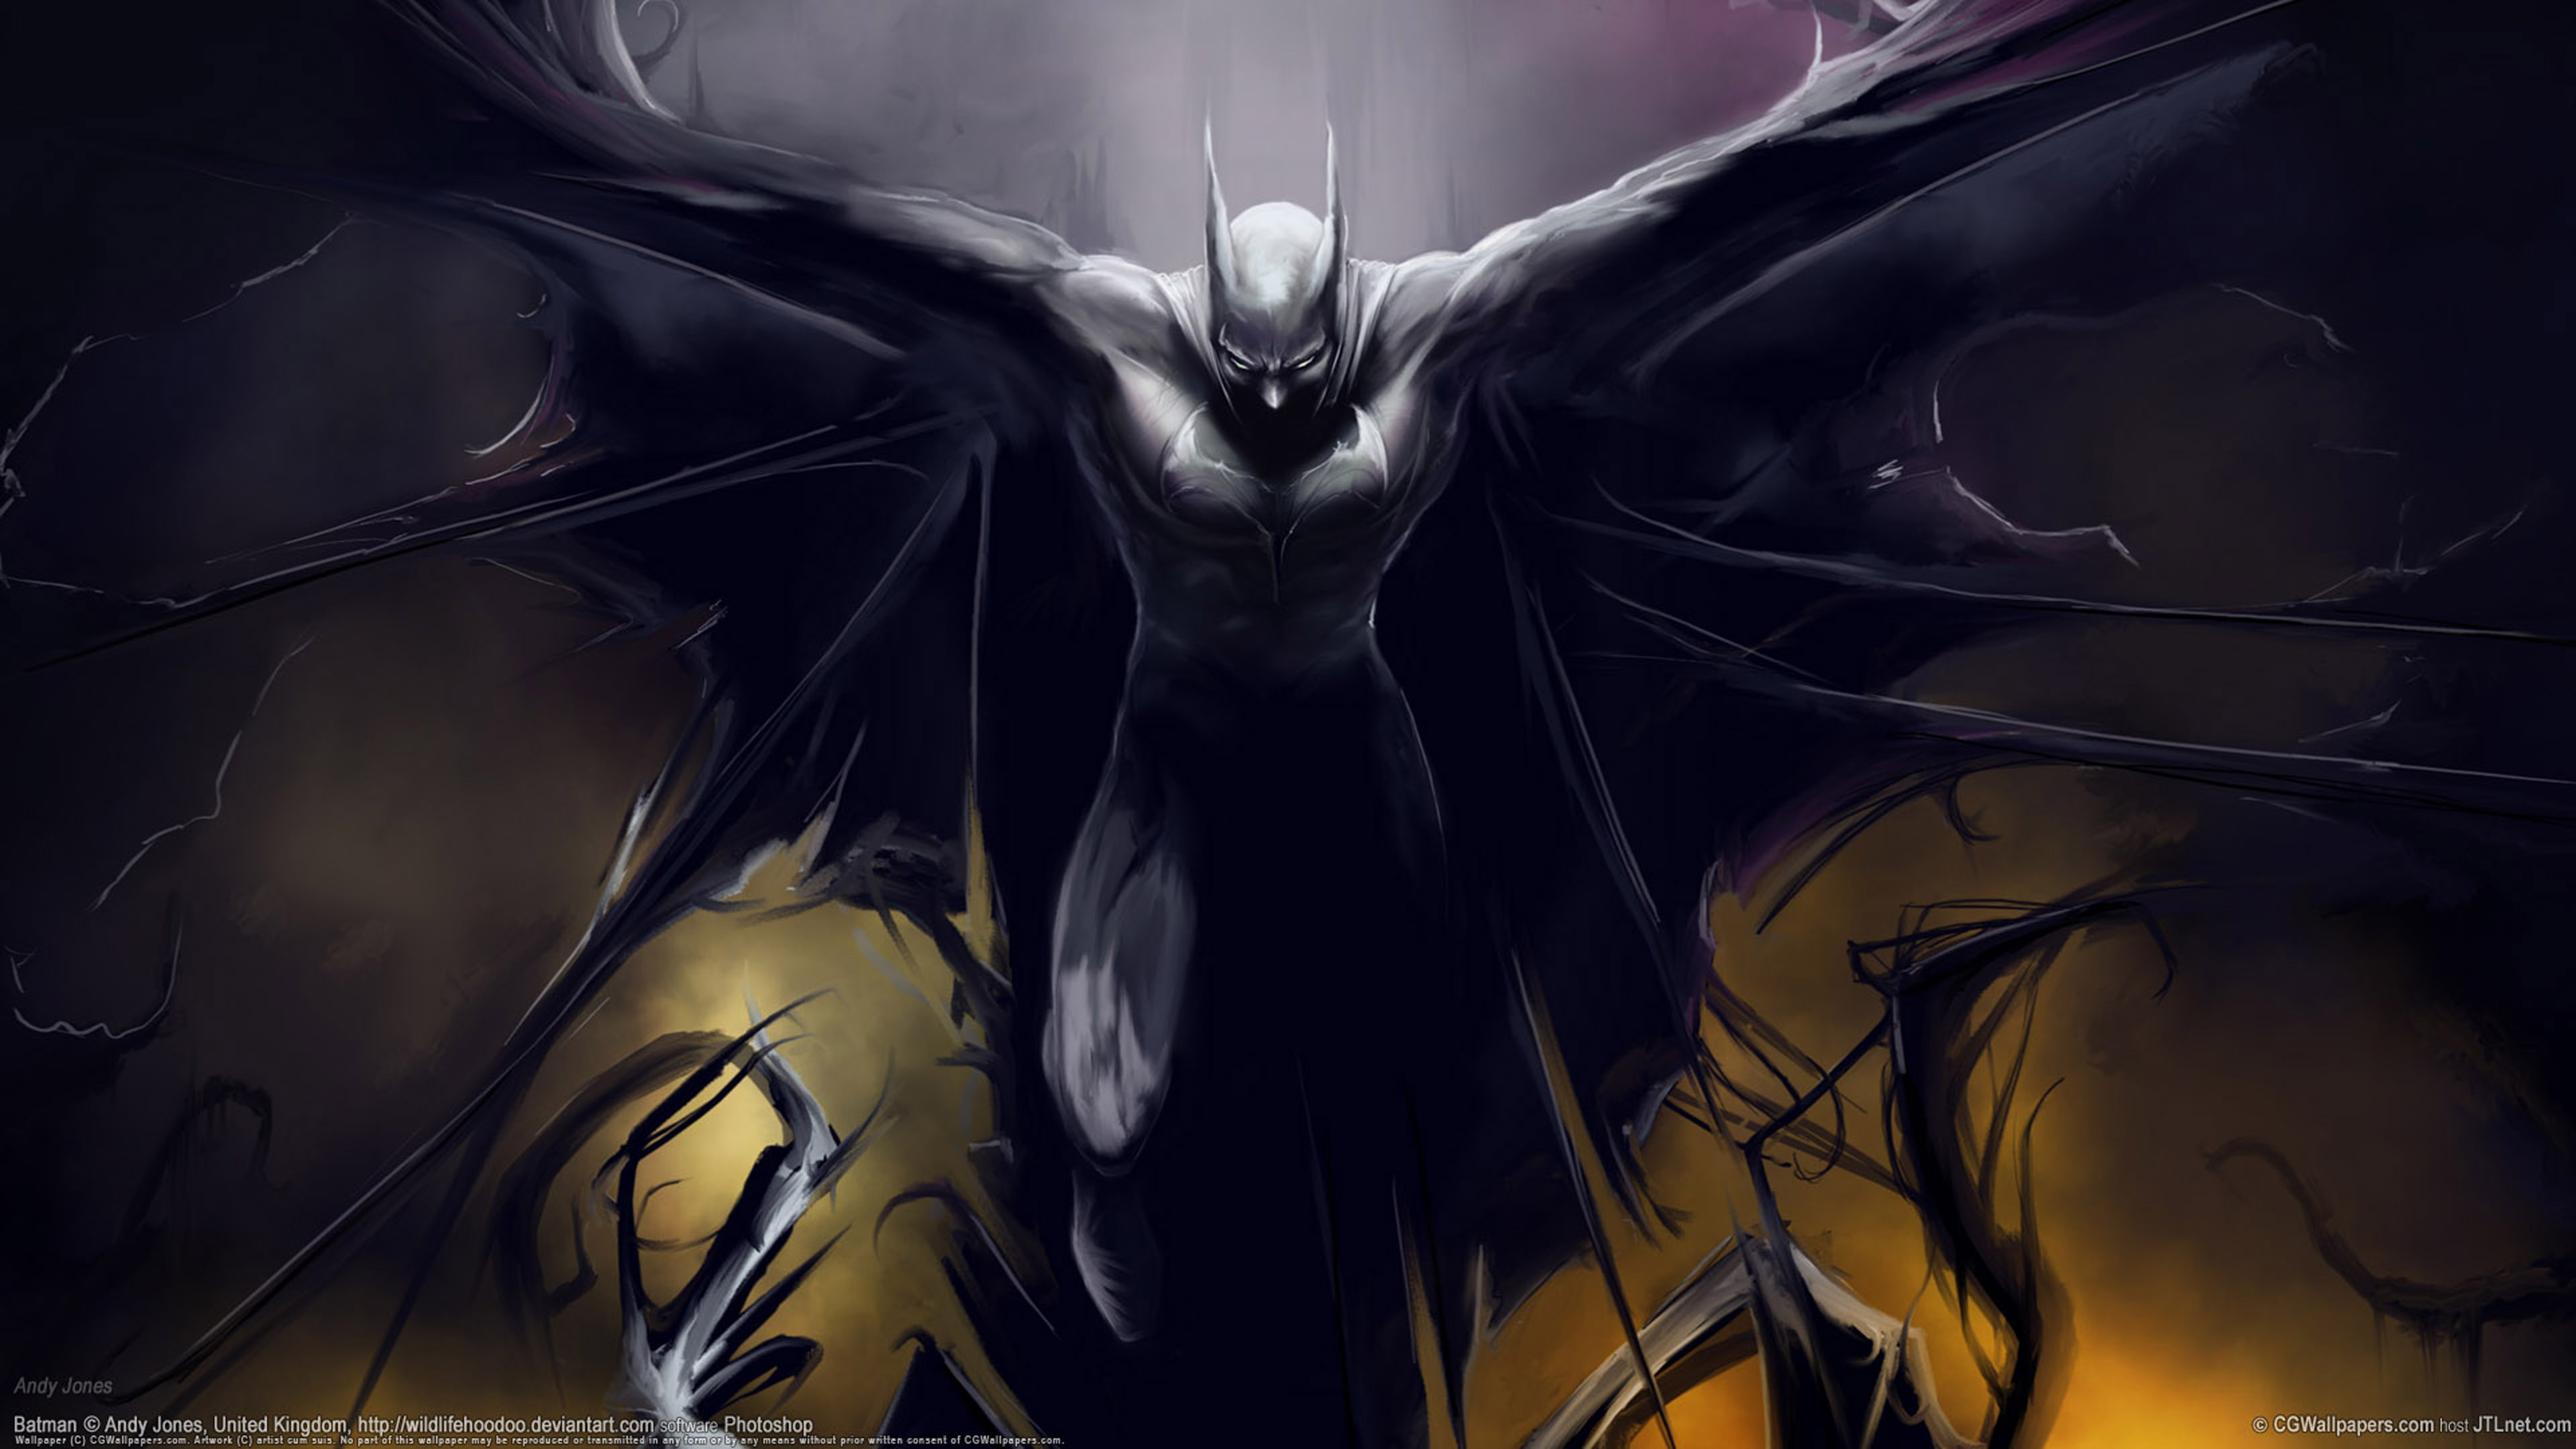 batman art wallpaper,cg artwork,personaggio fittizio,demone,batman,finzione